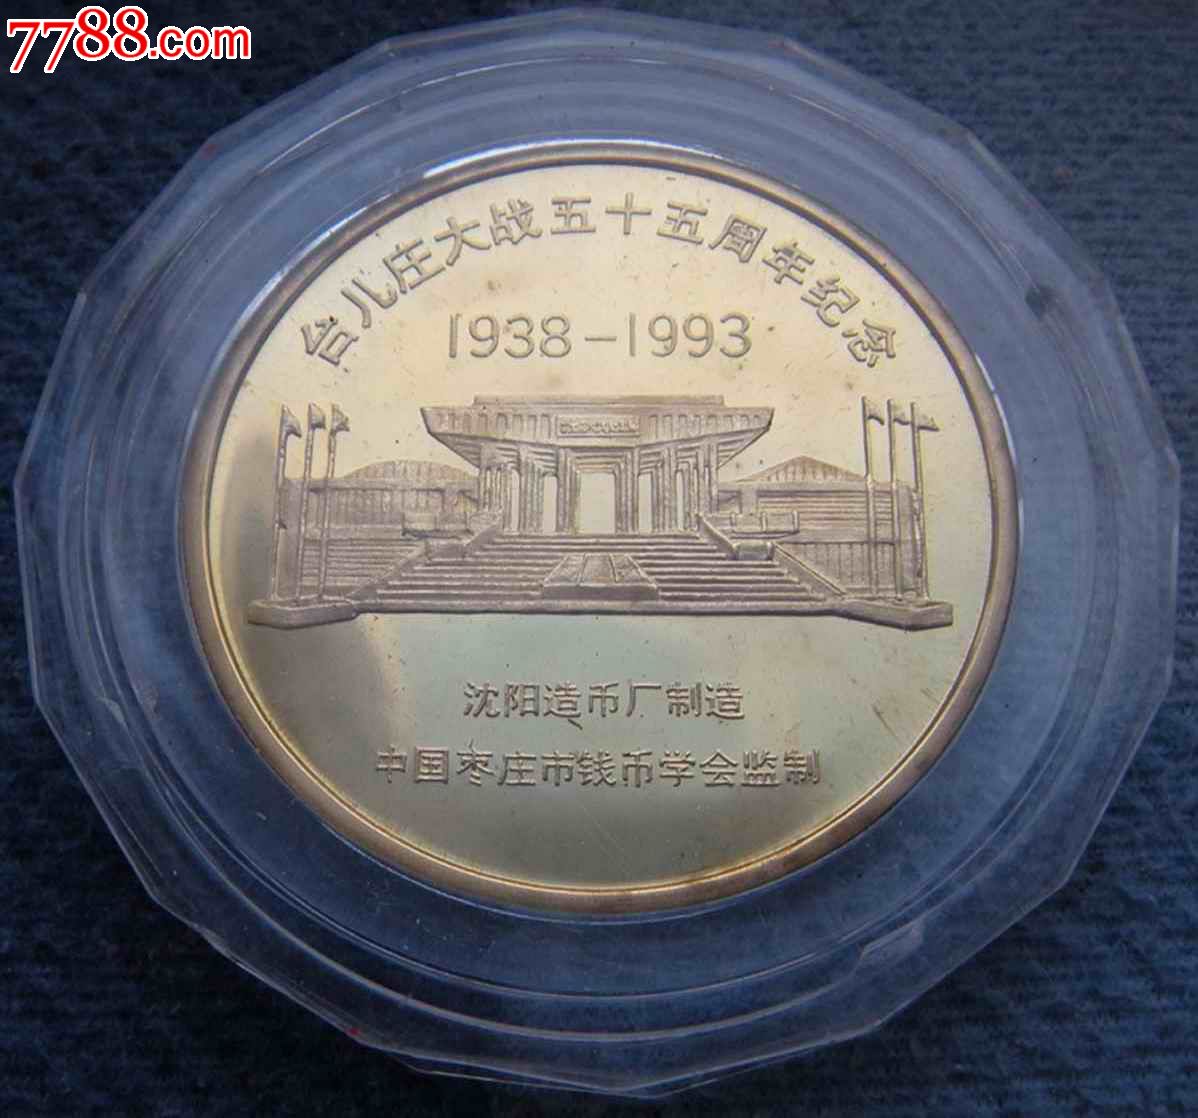 台儿庄大战55周年纪念章沈阳造币厂